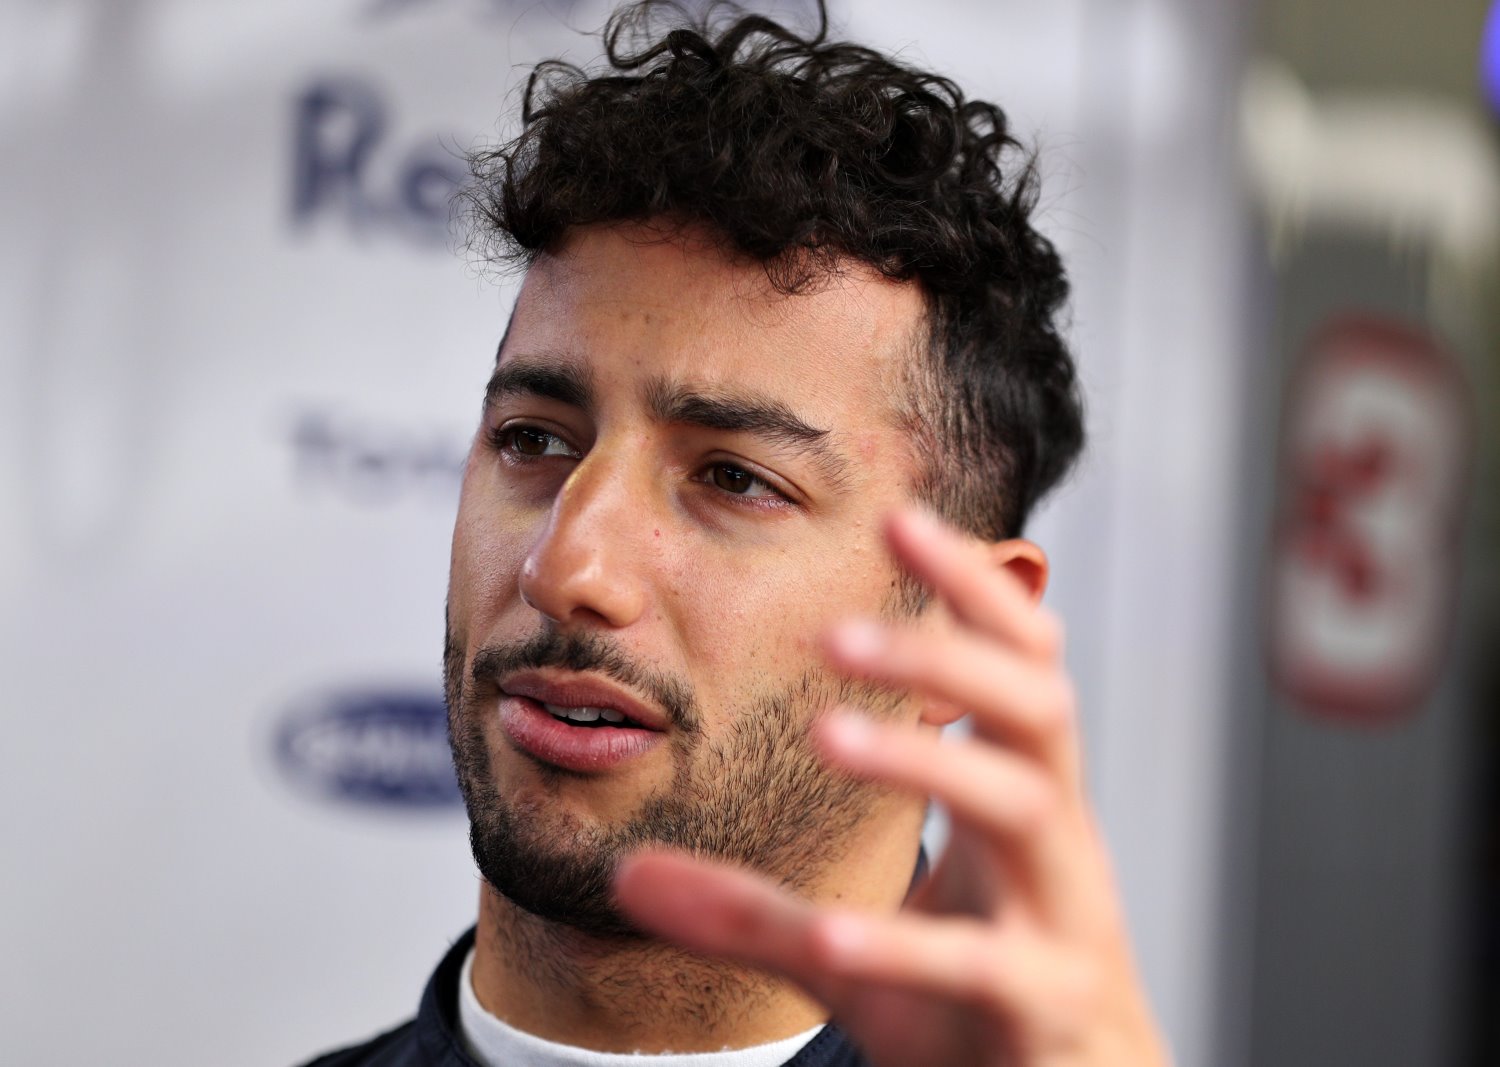 Daniel Ricciardo hopes to be on podium in Barcelona